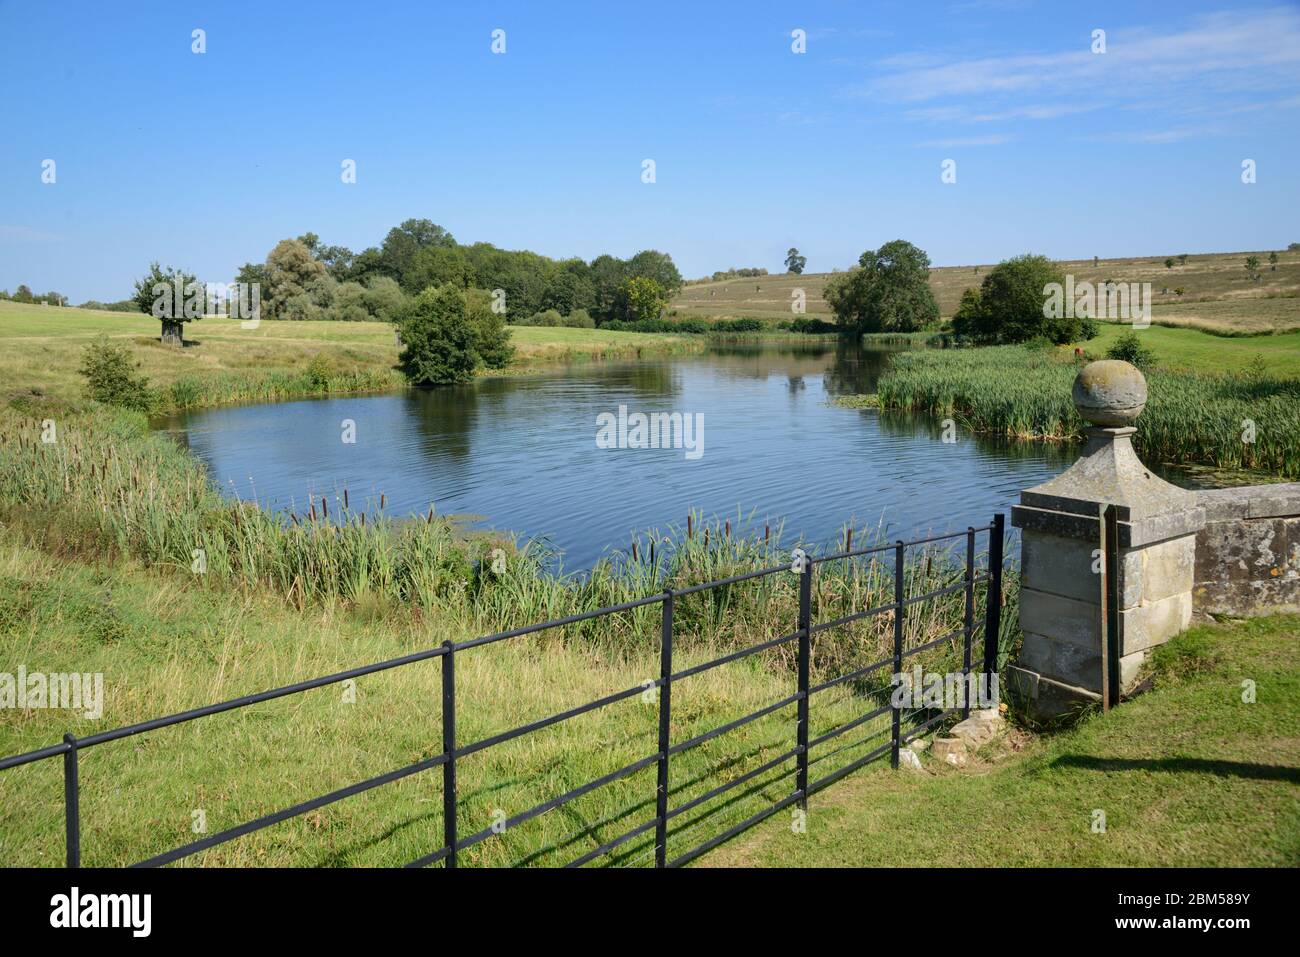 Chemins de fer, pont, lac et parc paysagé par Lancelot Capability Brown au Compton Verney Manor (1714) Kineton Warwickshire Angleterre Royaume-Uni Banque D'Images